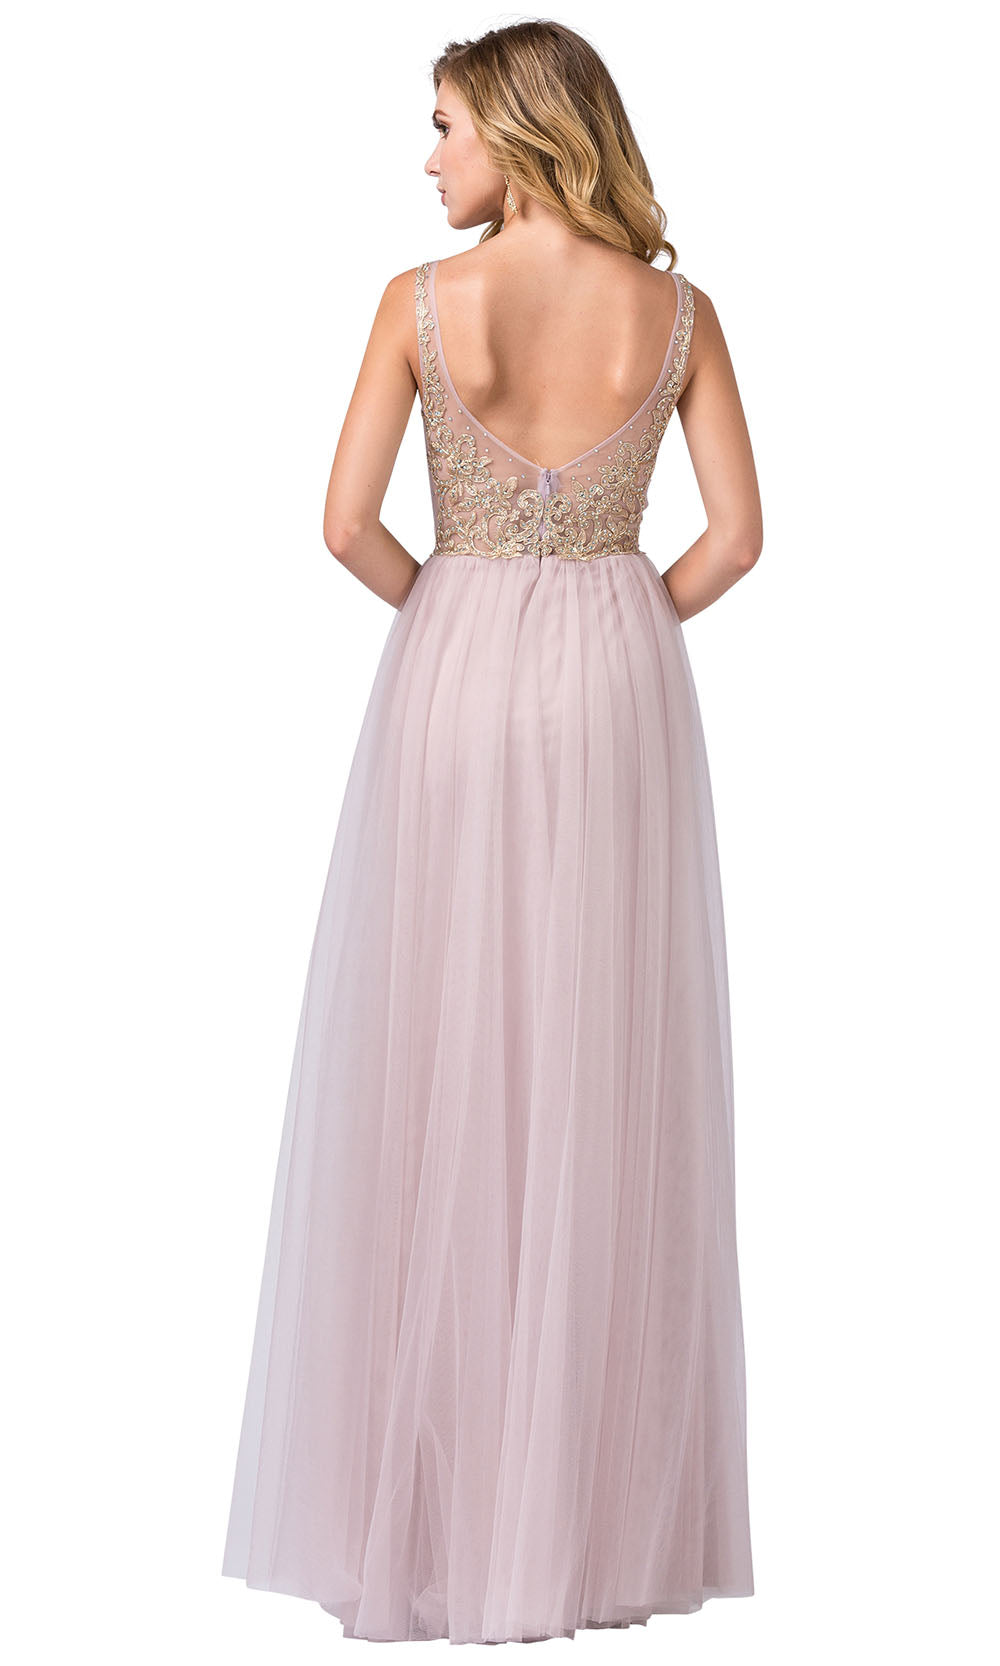 Dancing Queen - 2525 Appliqued Sheer Overskirt Dress In Pink